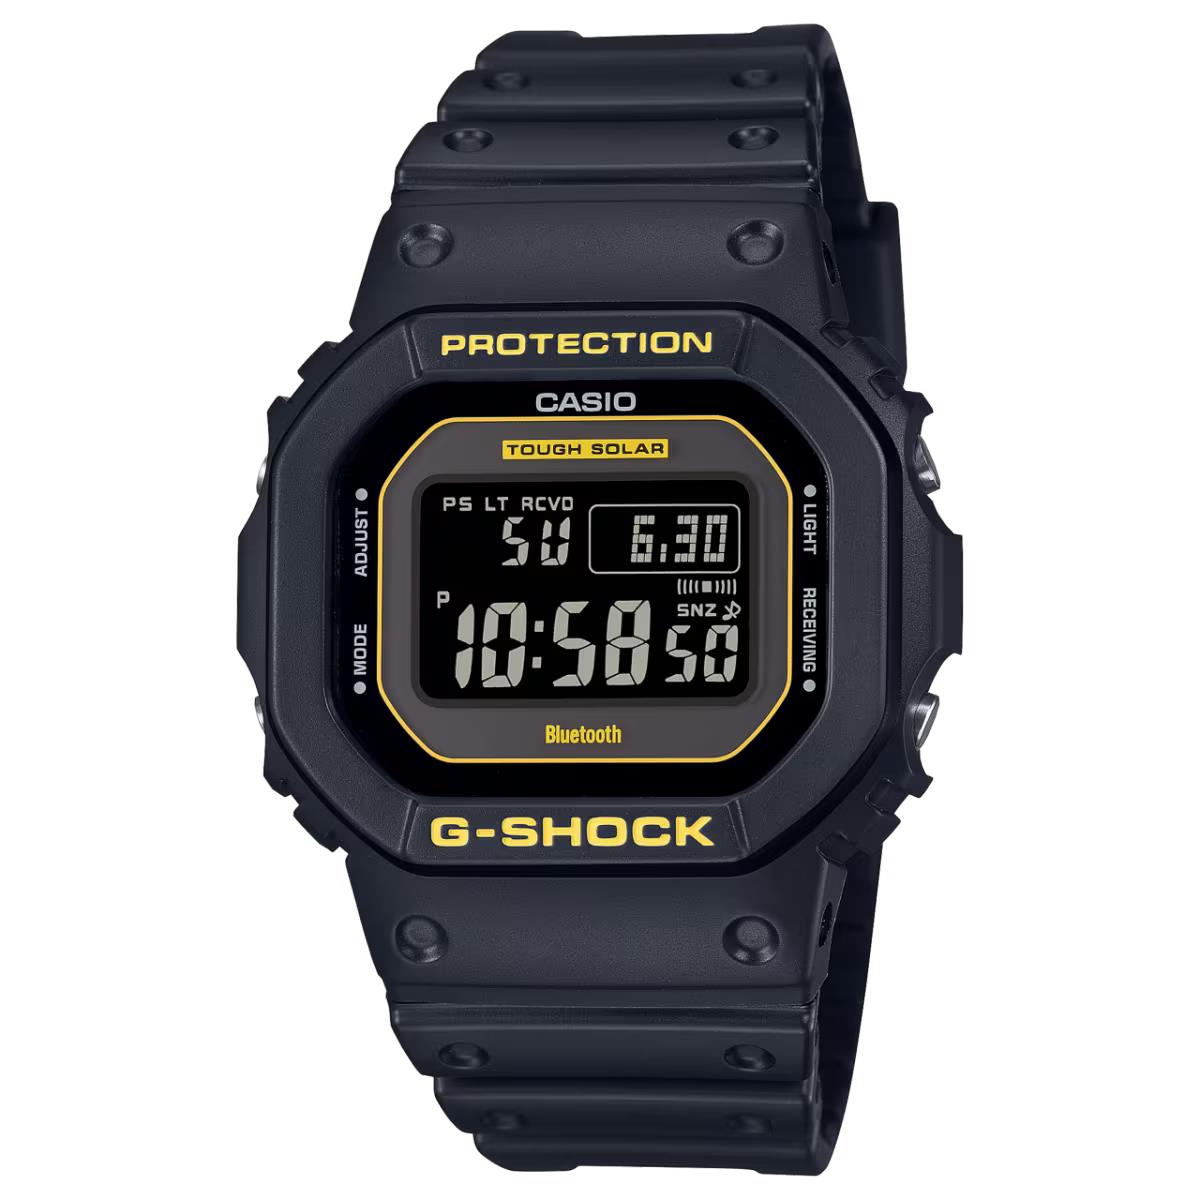 Casio G-shock Digital 5600 Series Black Watch GWB5600CY-1